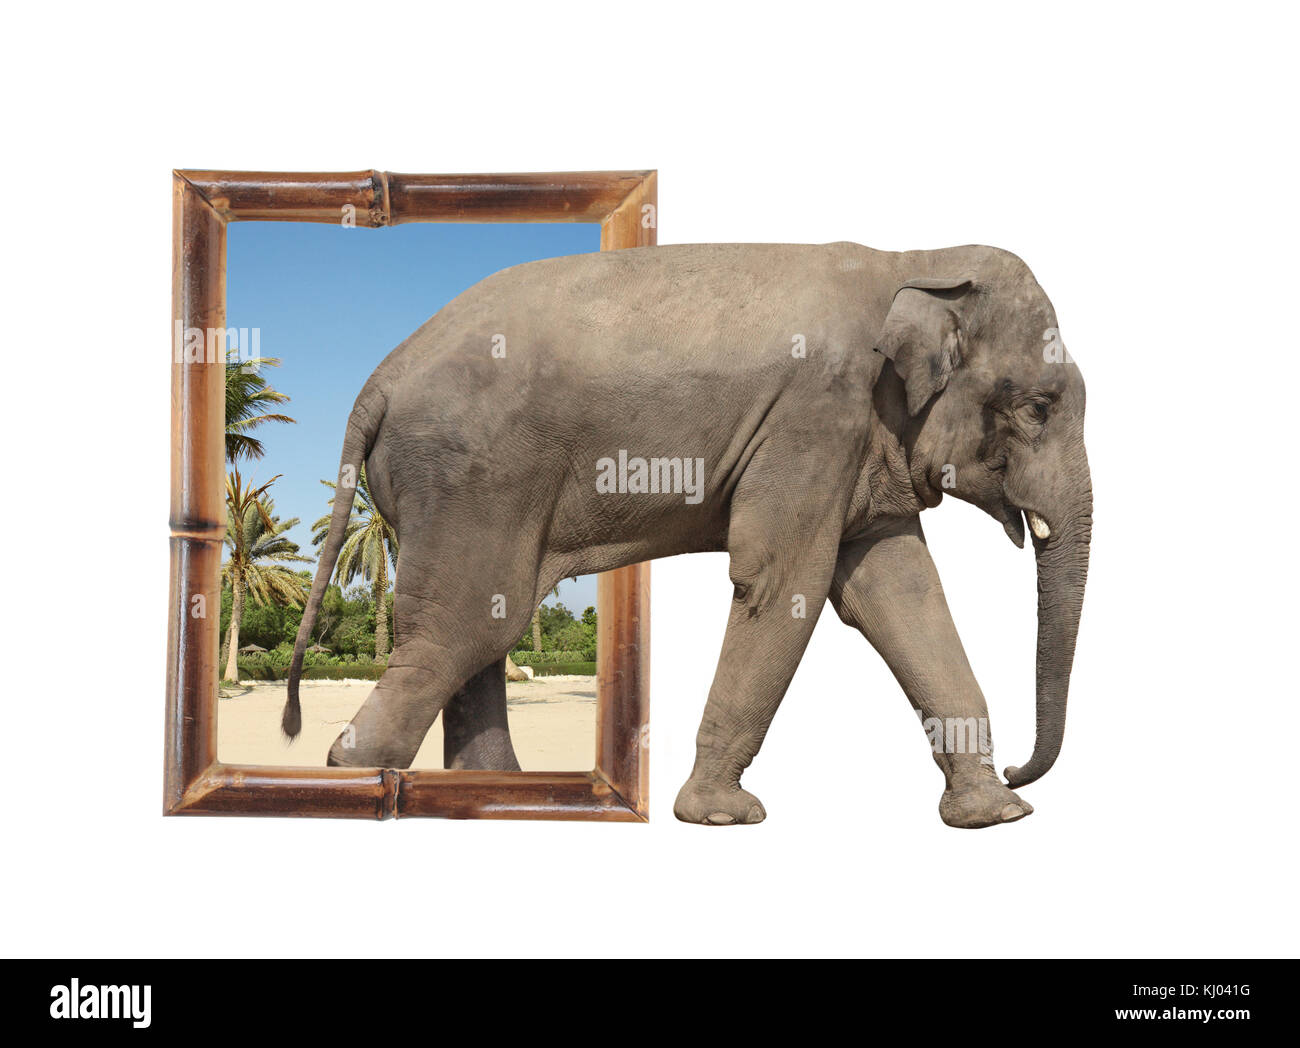 Éléphant (Elephas maximus) en cadre bambou avec effet 3D. Isolé sur fond blanc Banque D'Images